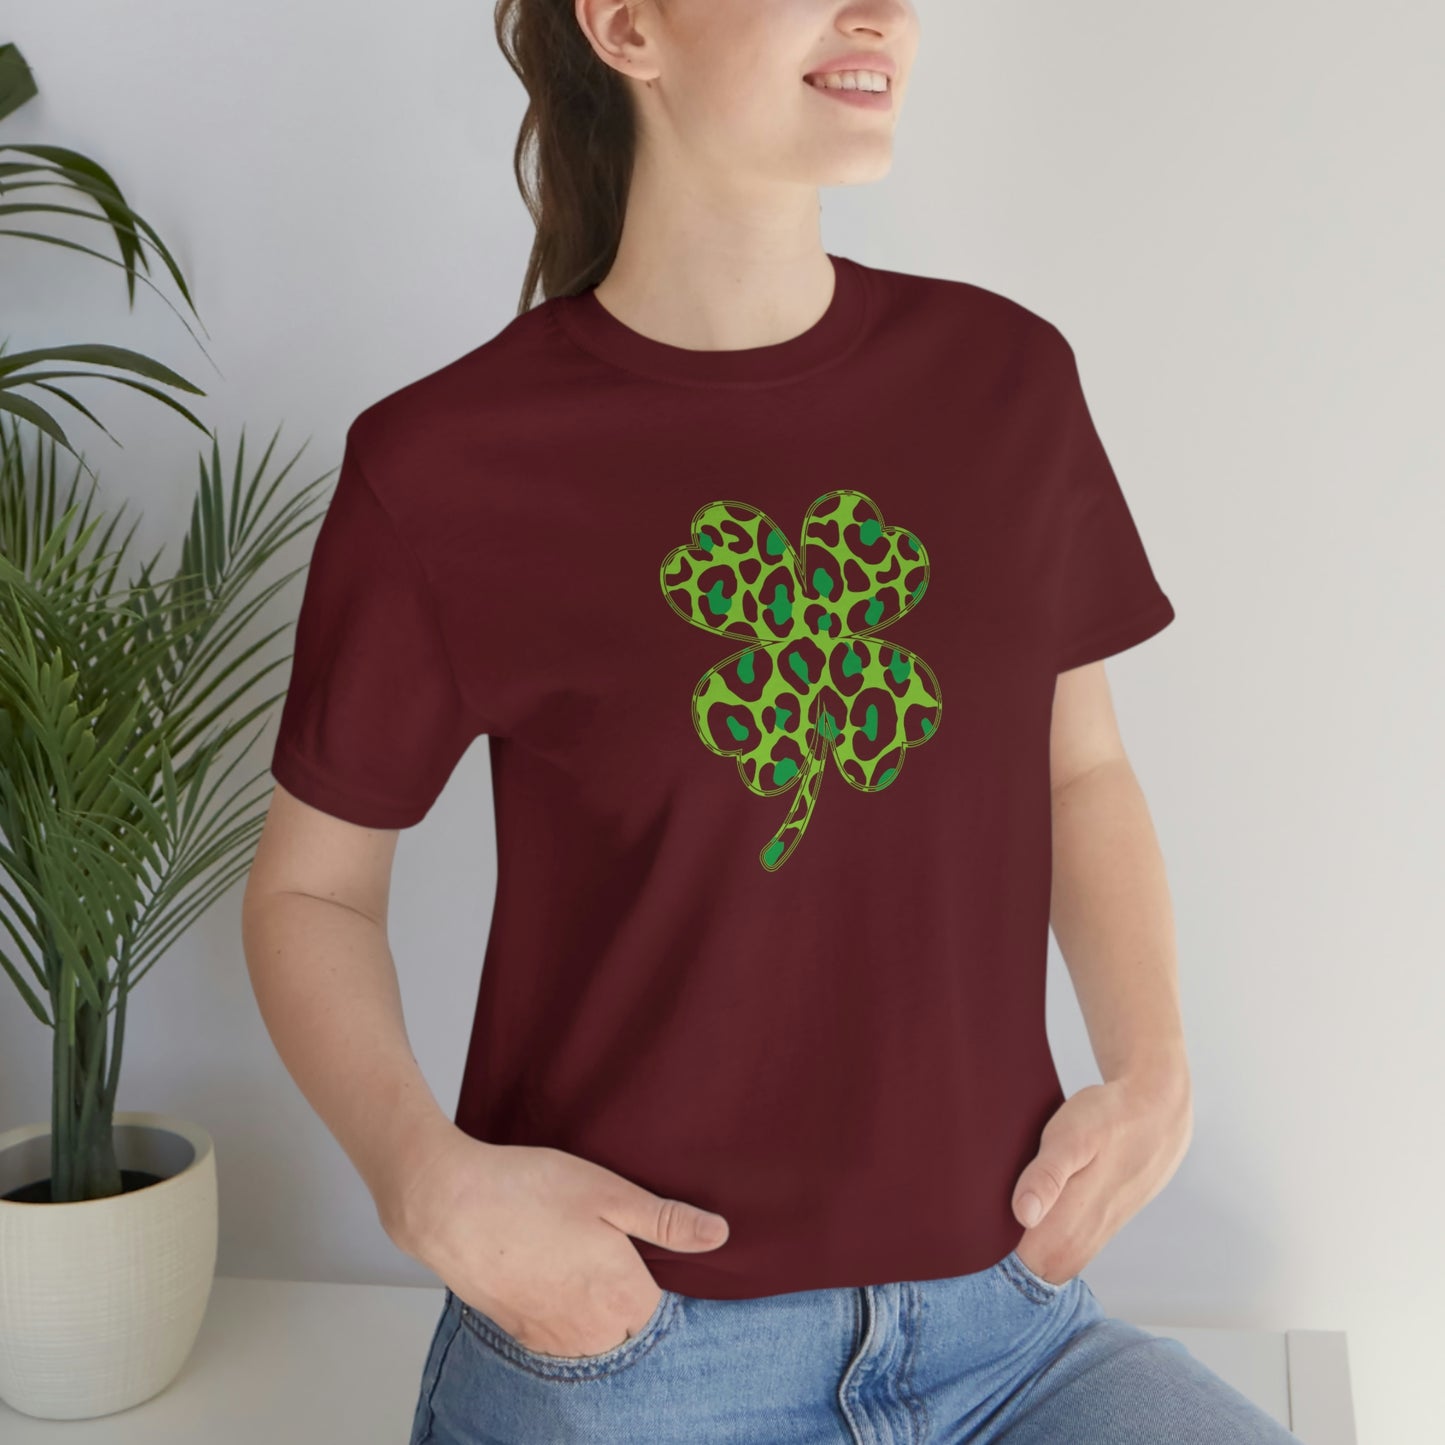 Leopard Shamrock Shirt | Lucky Four Leaf Clover Shirt | Saint Patricks Day Shirt | Unisex Jersey Short Sleeve Tee